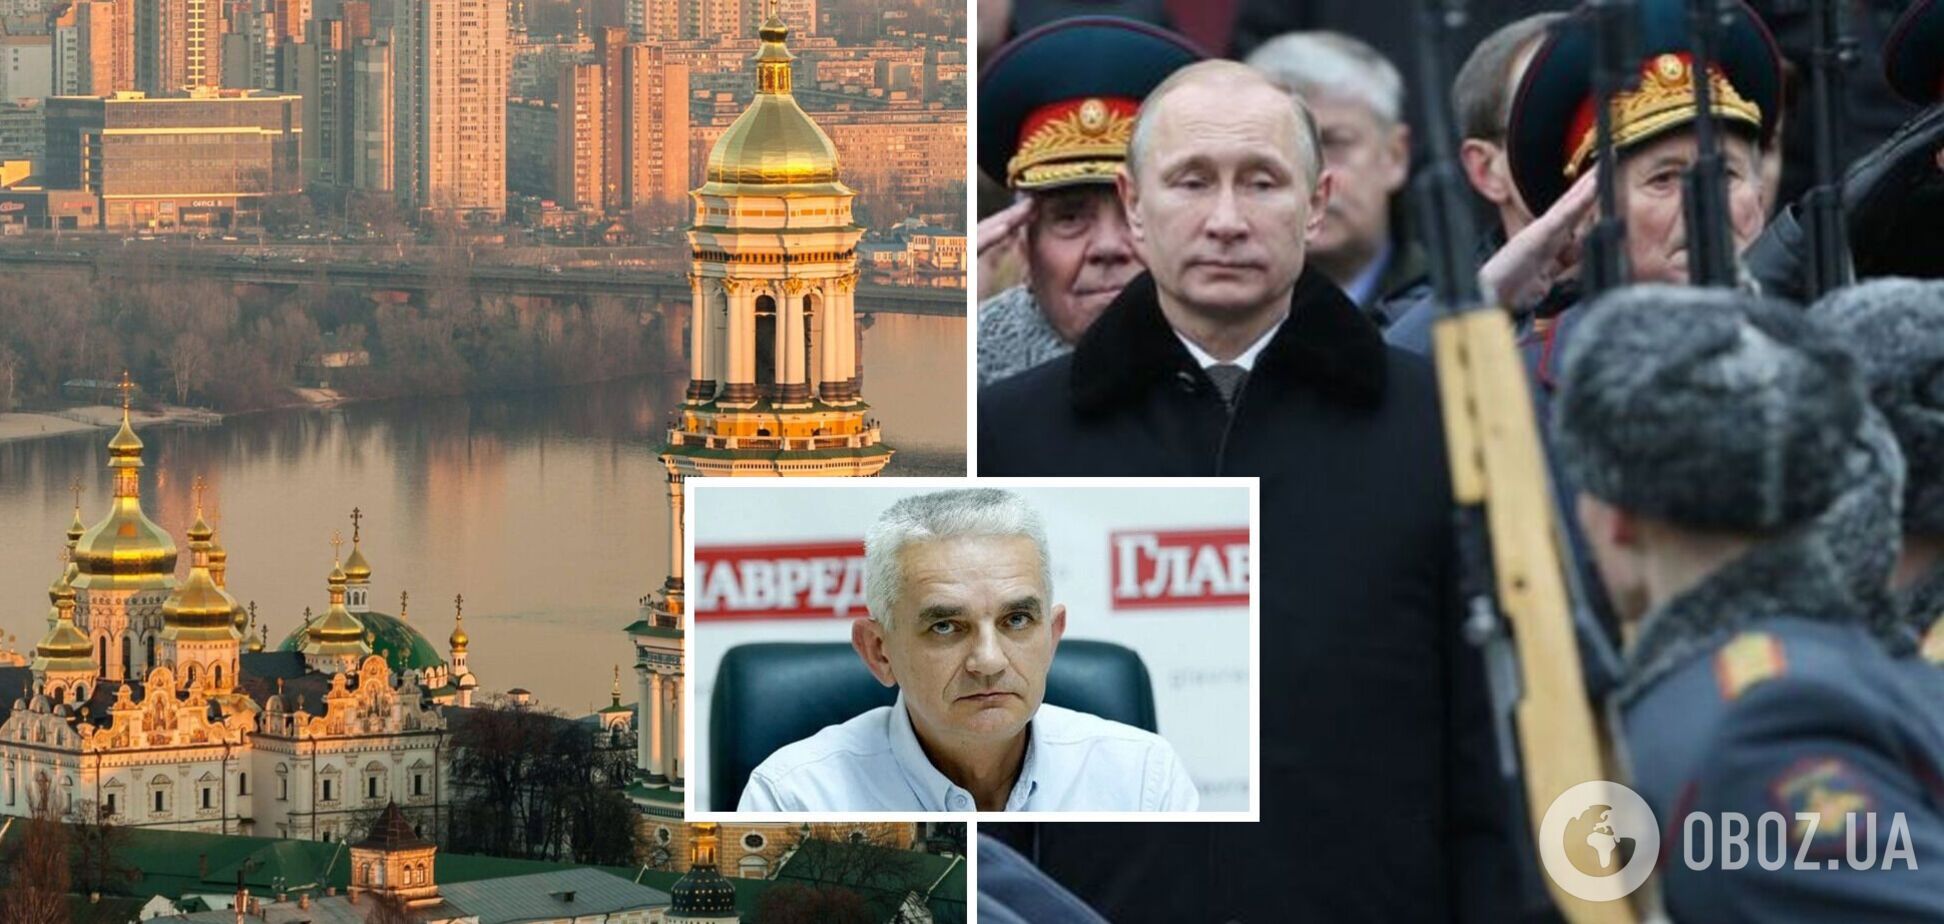 Кремль планирует мятеж в Киеве и делает ставку на захват столицы: интервью с Мельником